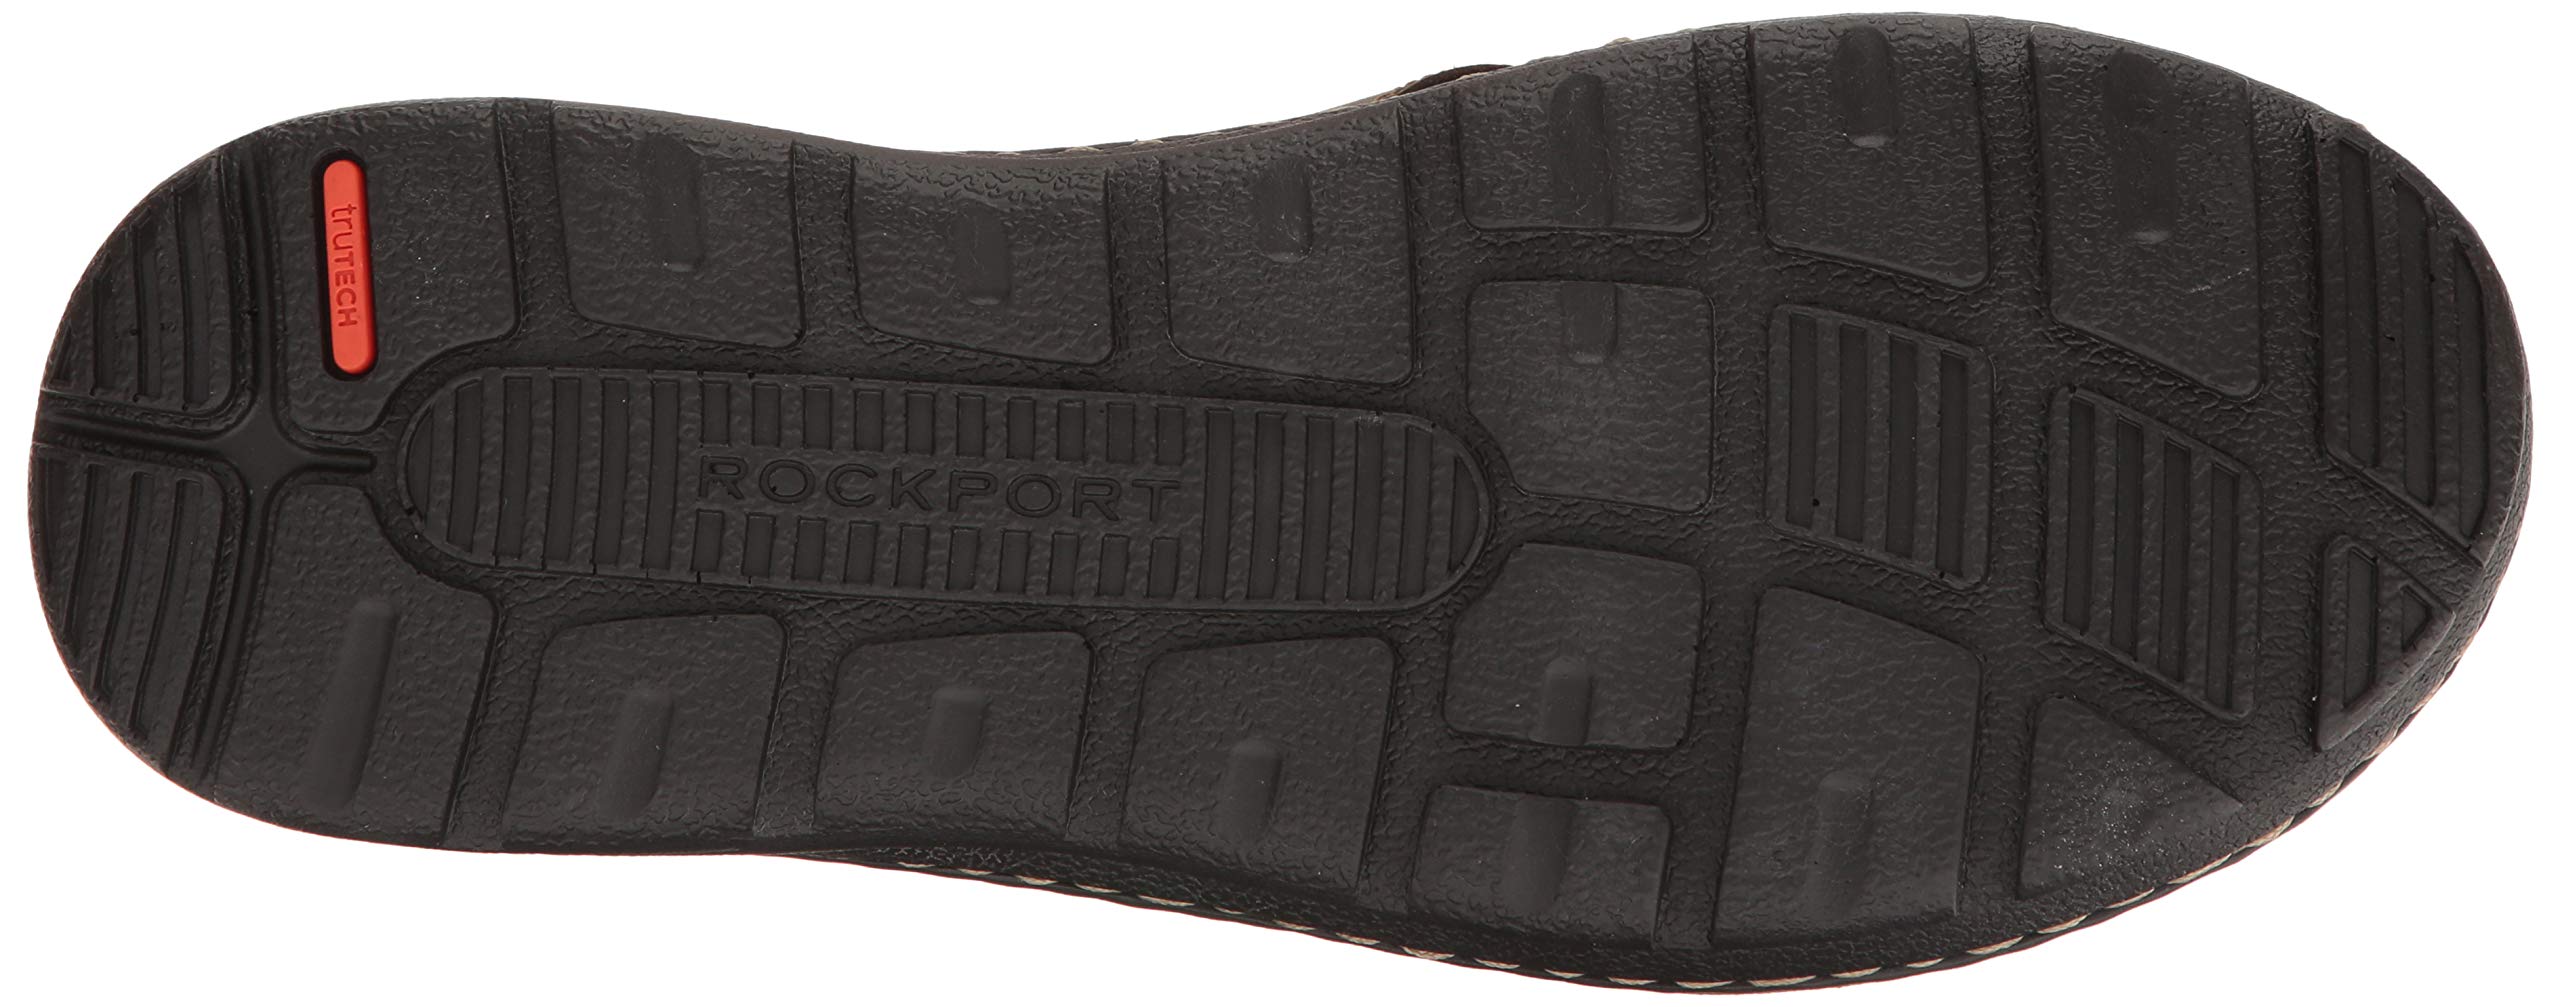 Rockport Men's Darwyn Xband Slide Sandal